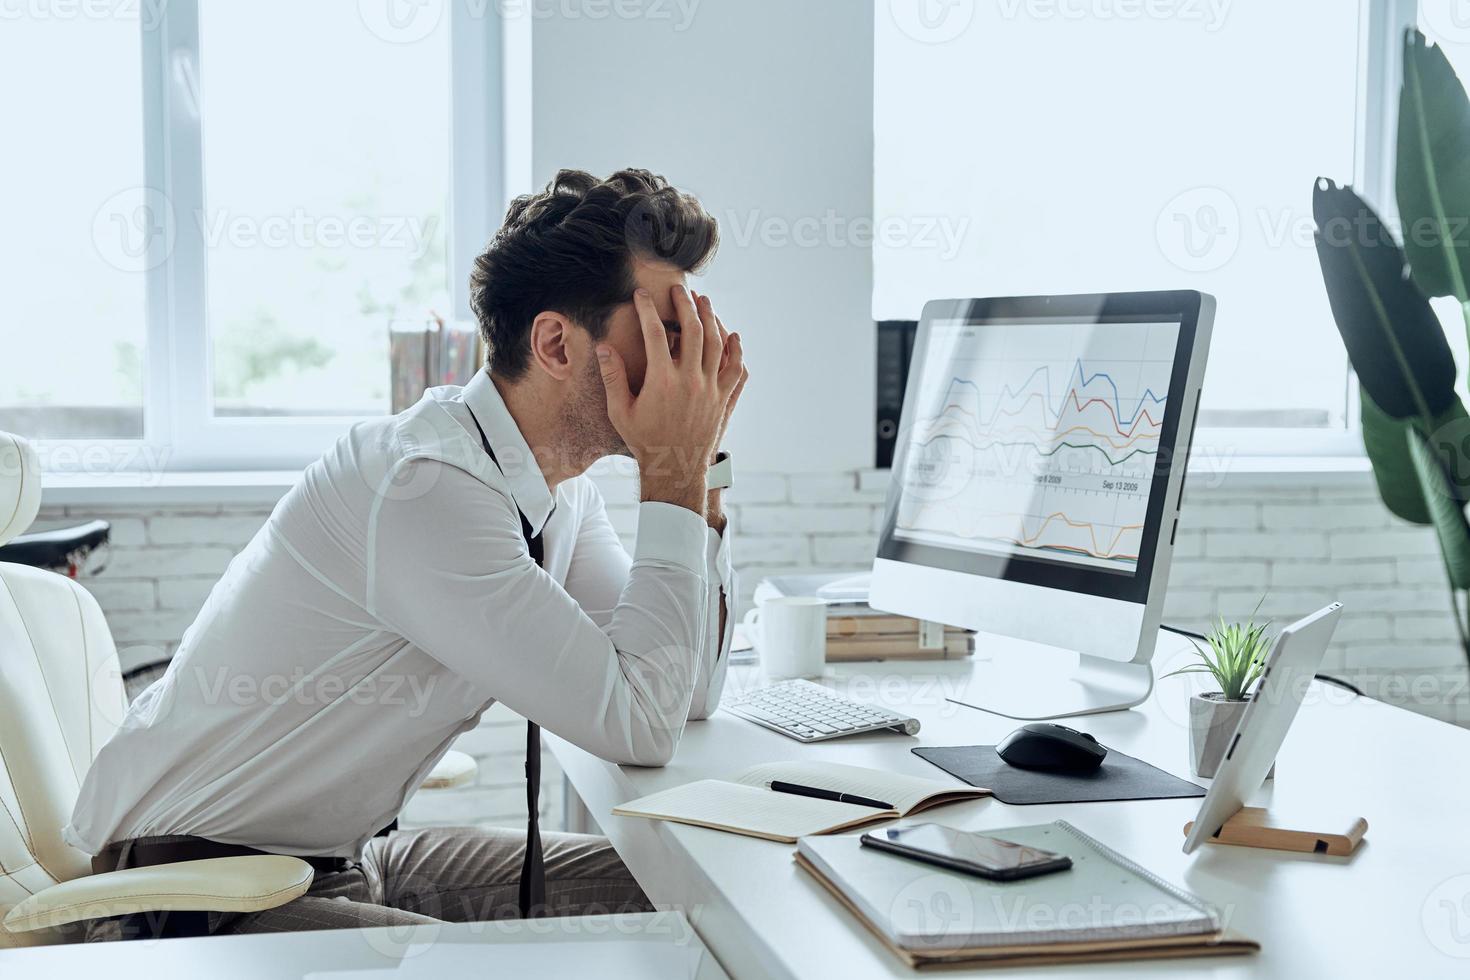 depressieve jongeman die zijn gezicht bedekt met handen terwijl hij op zijn werkplek op kantoor zit foto